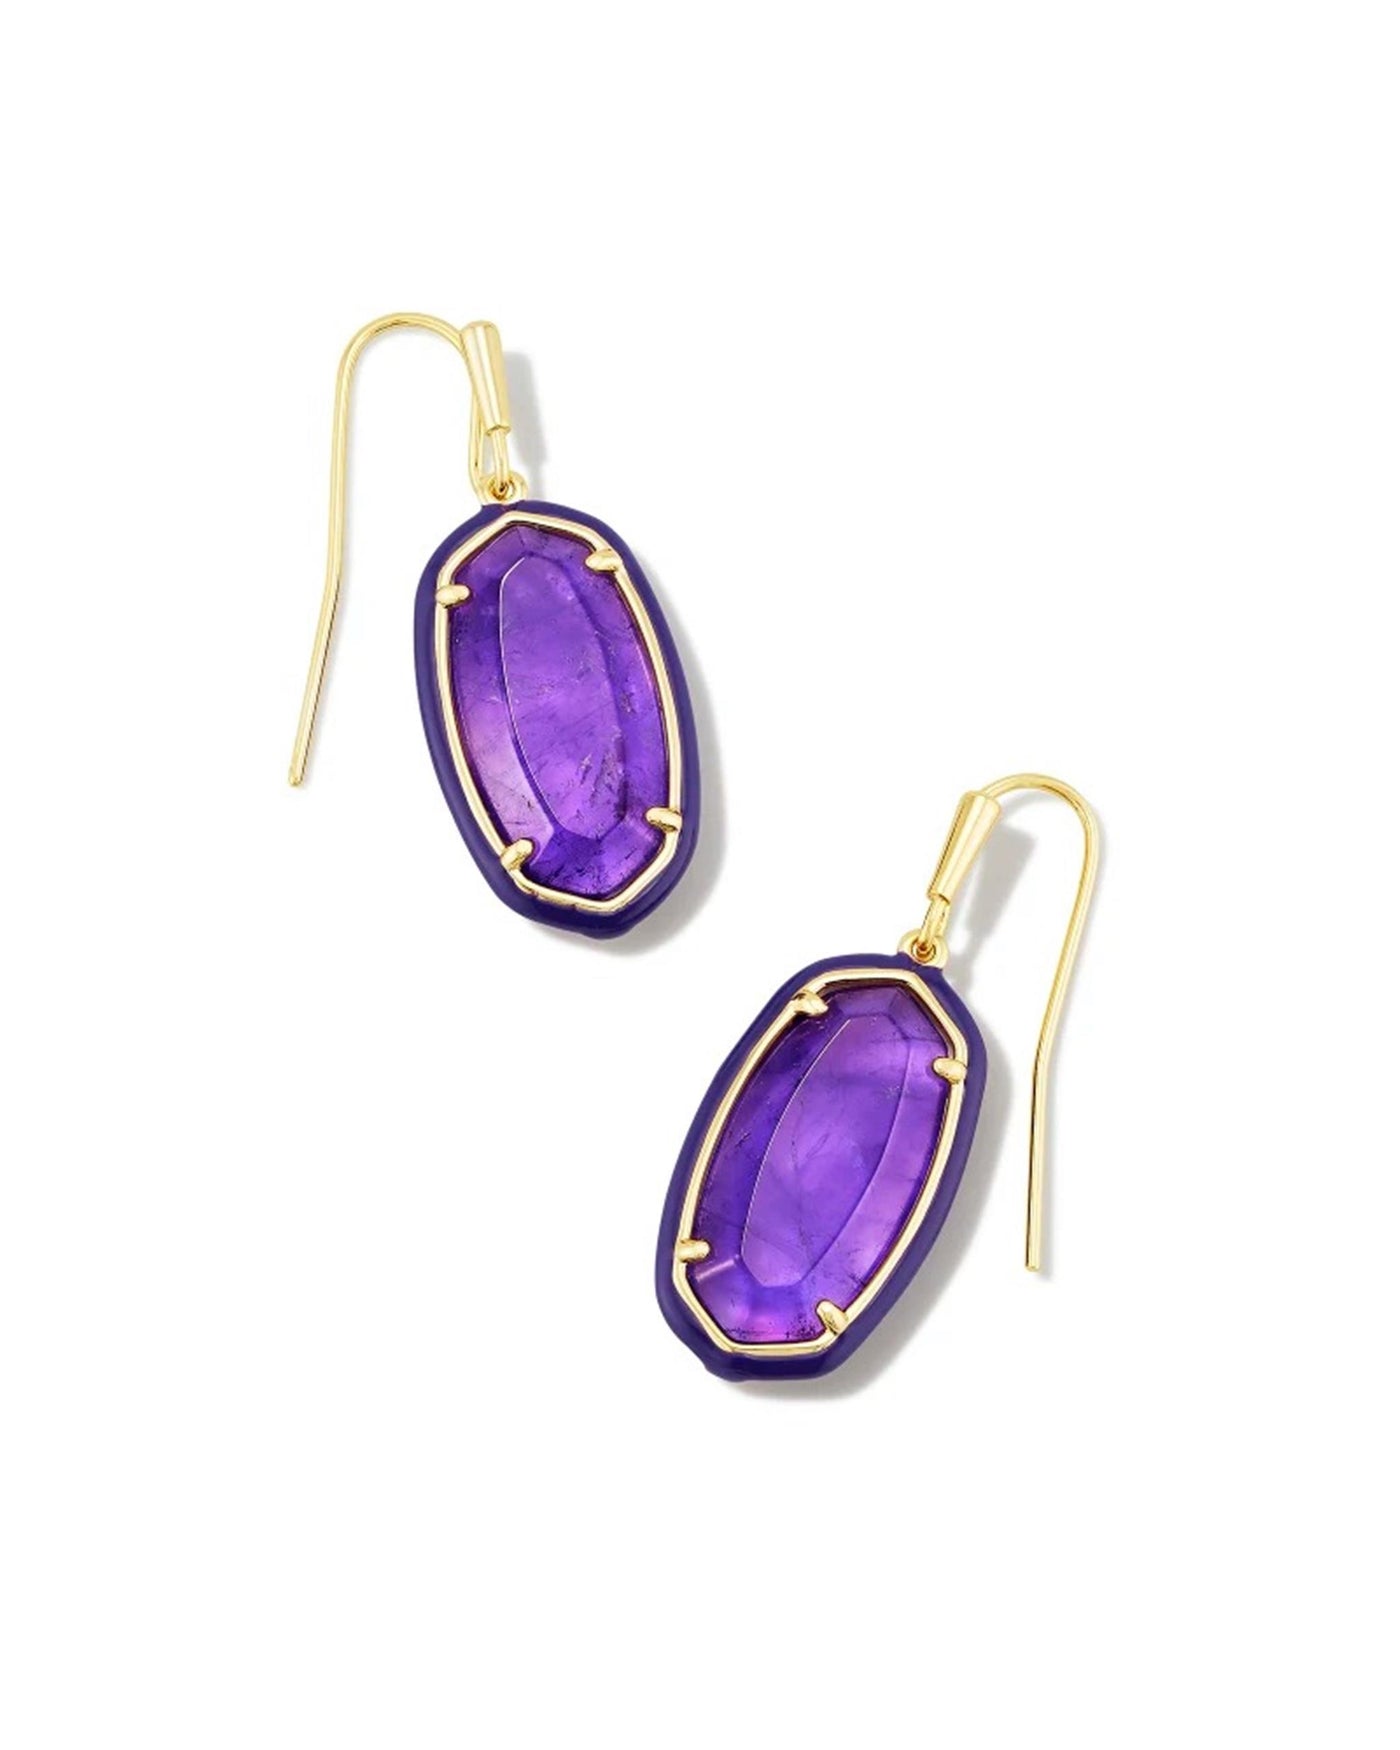 Gold Tone Earrings Featuring Purple Enamel by Kendra Scott